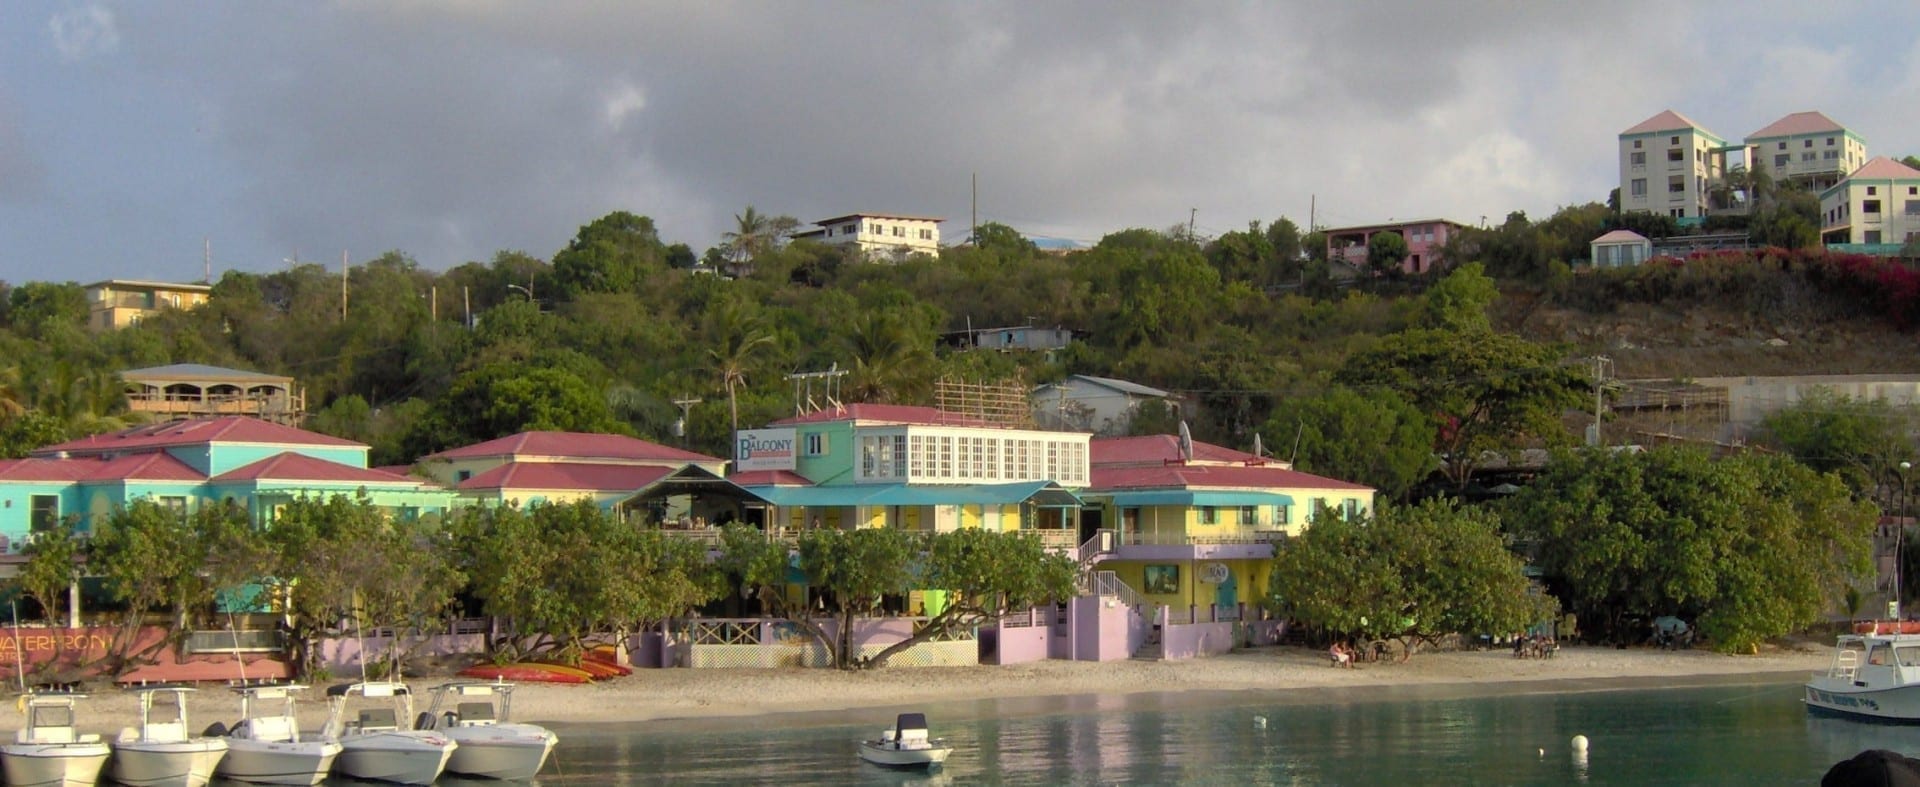 Cruz Bay, St. John, Islas Vírgenes de los Estados Unidos. Islas Vírgenes de los Estados Unidos